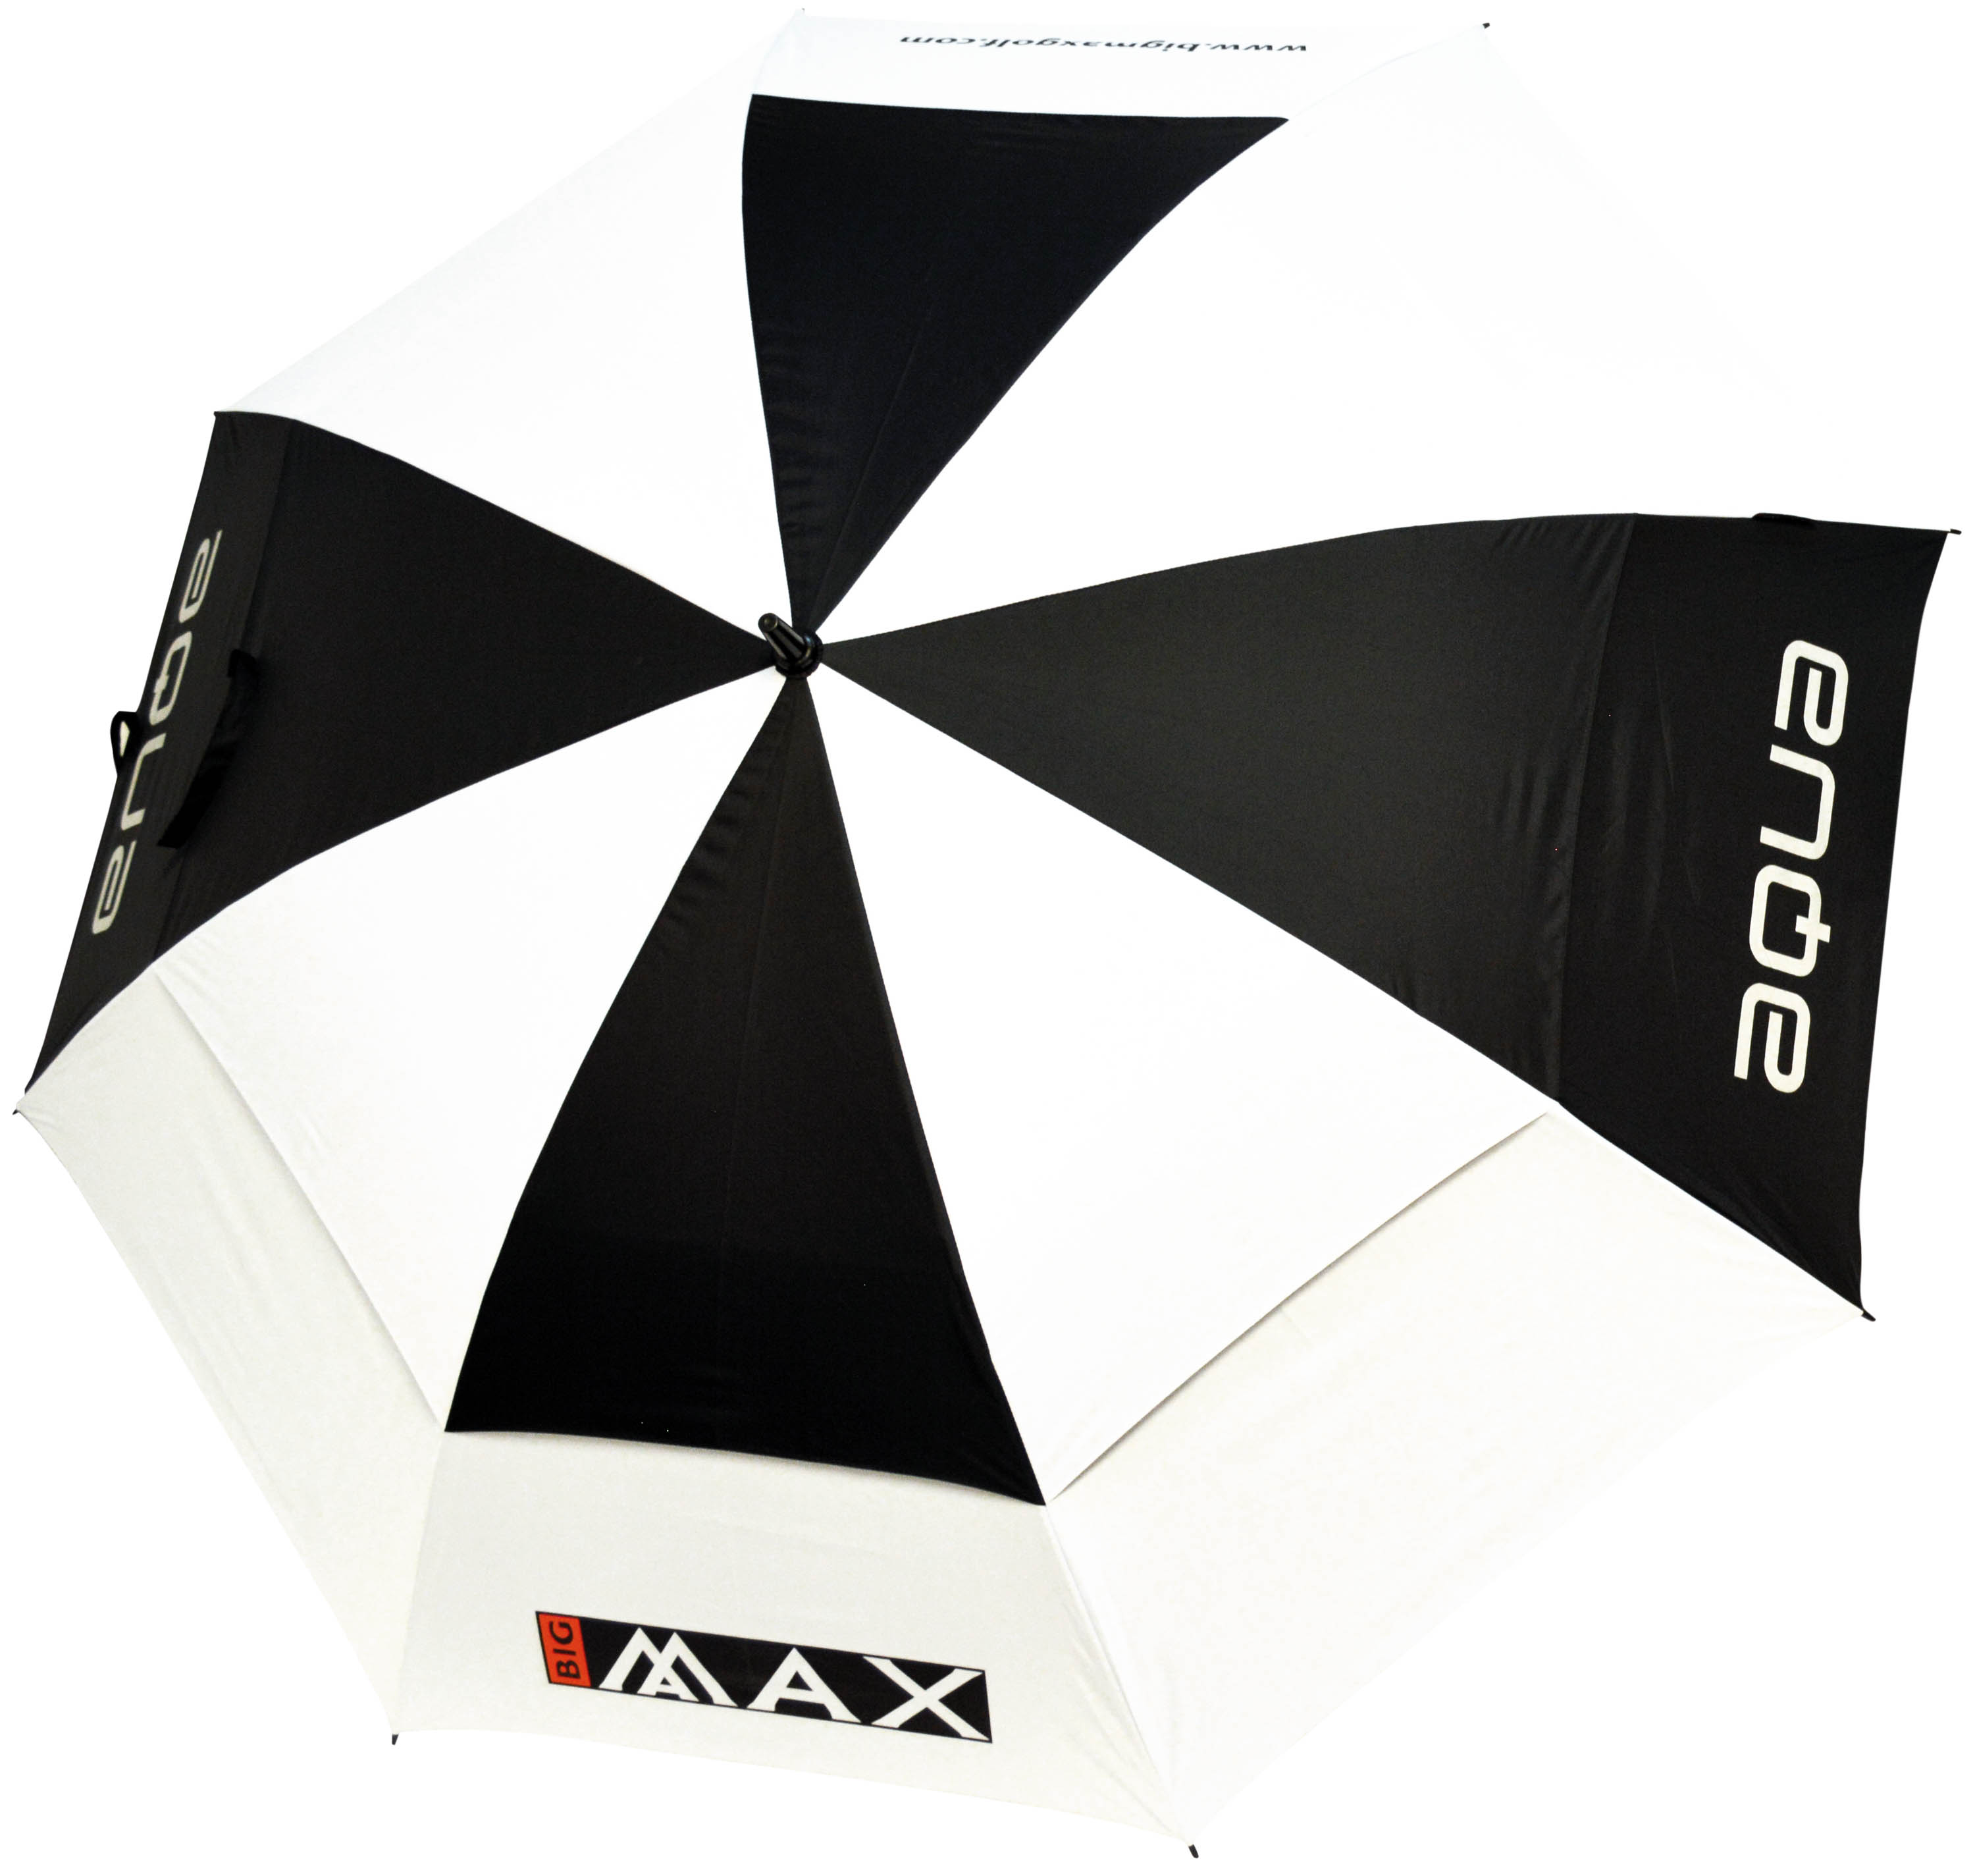 Big Max Aqua XL Umbrella mit UV 50 Schutz